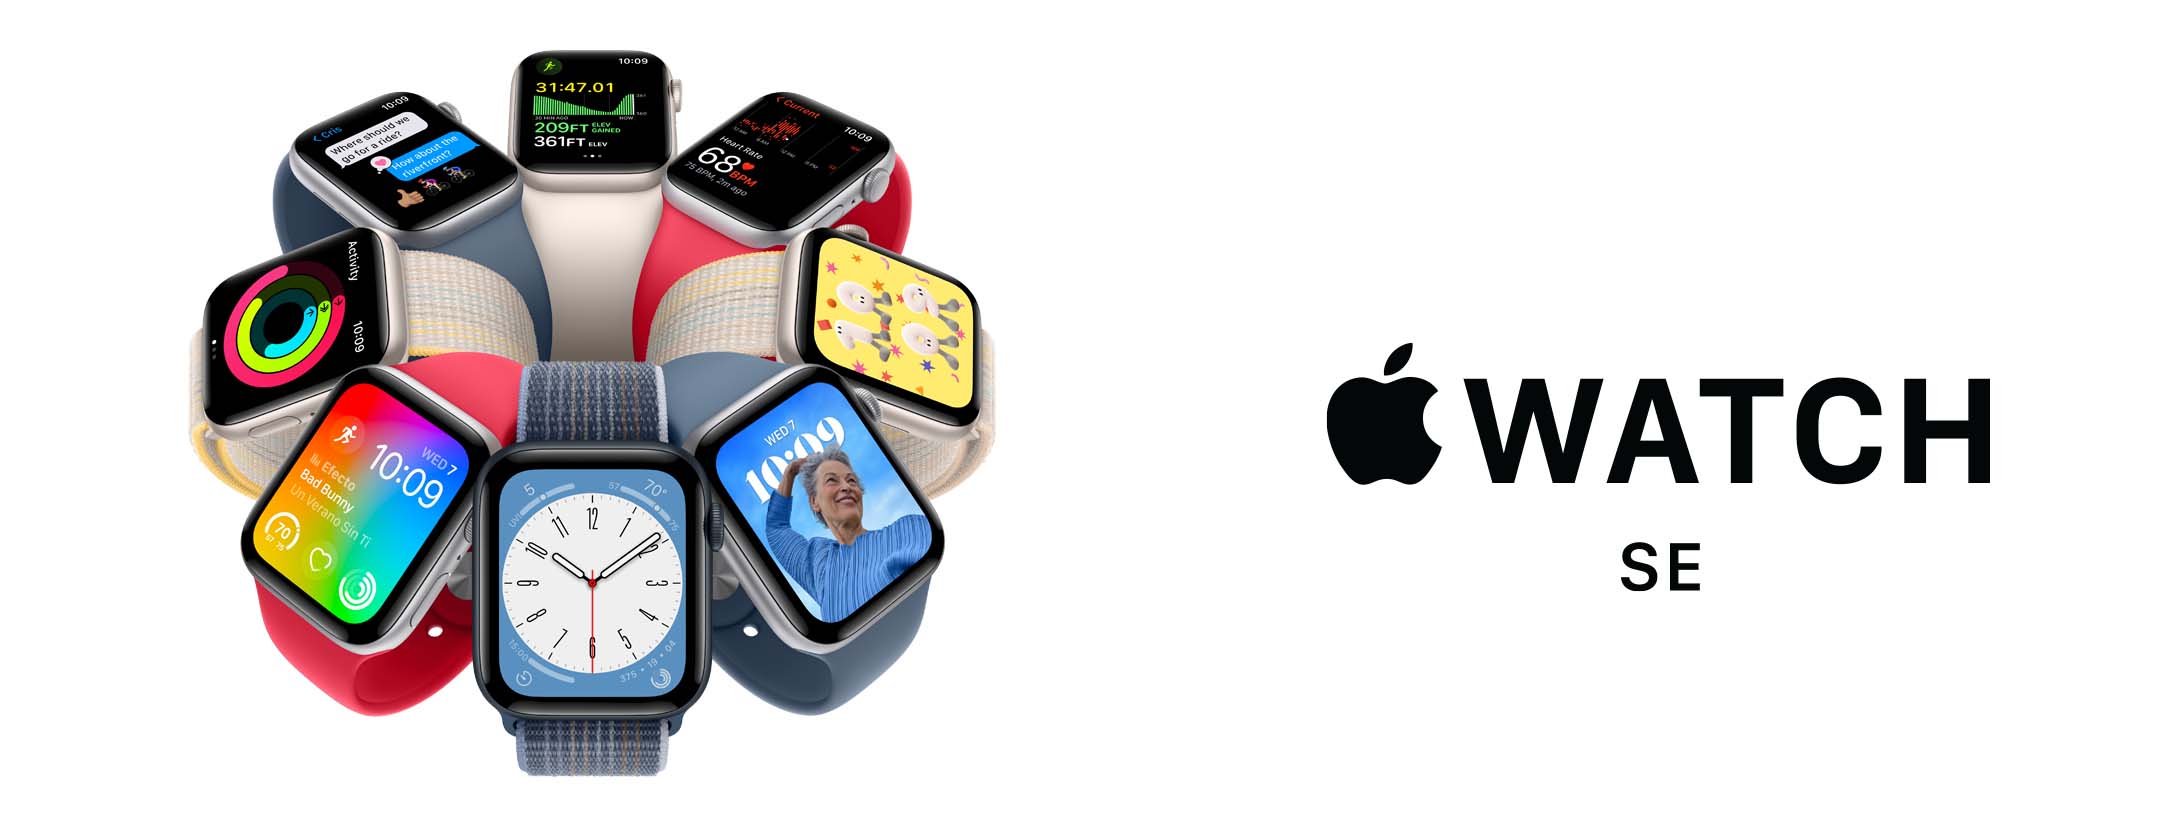 Apple Watch Se (2nd Gen)